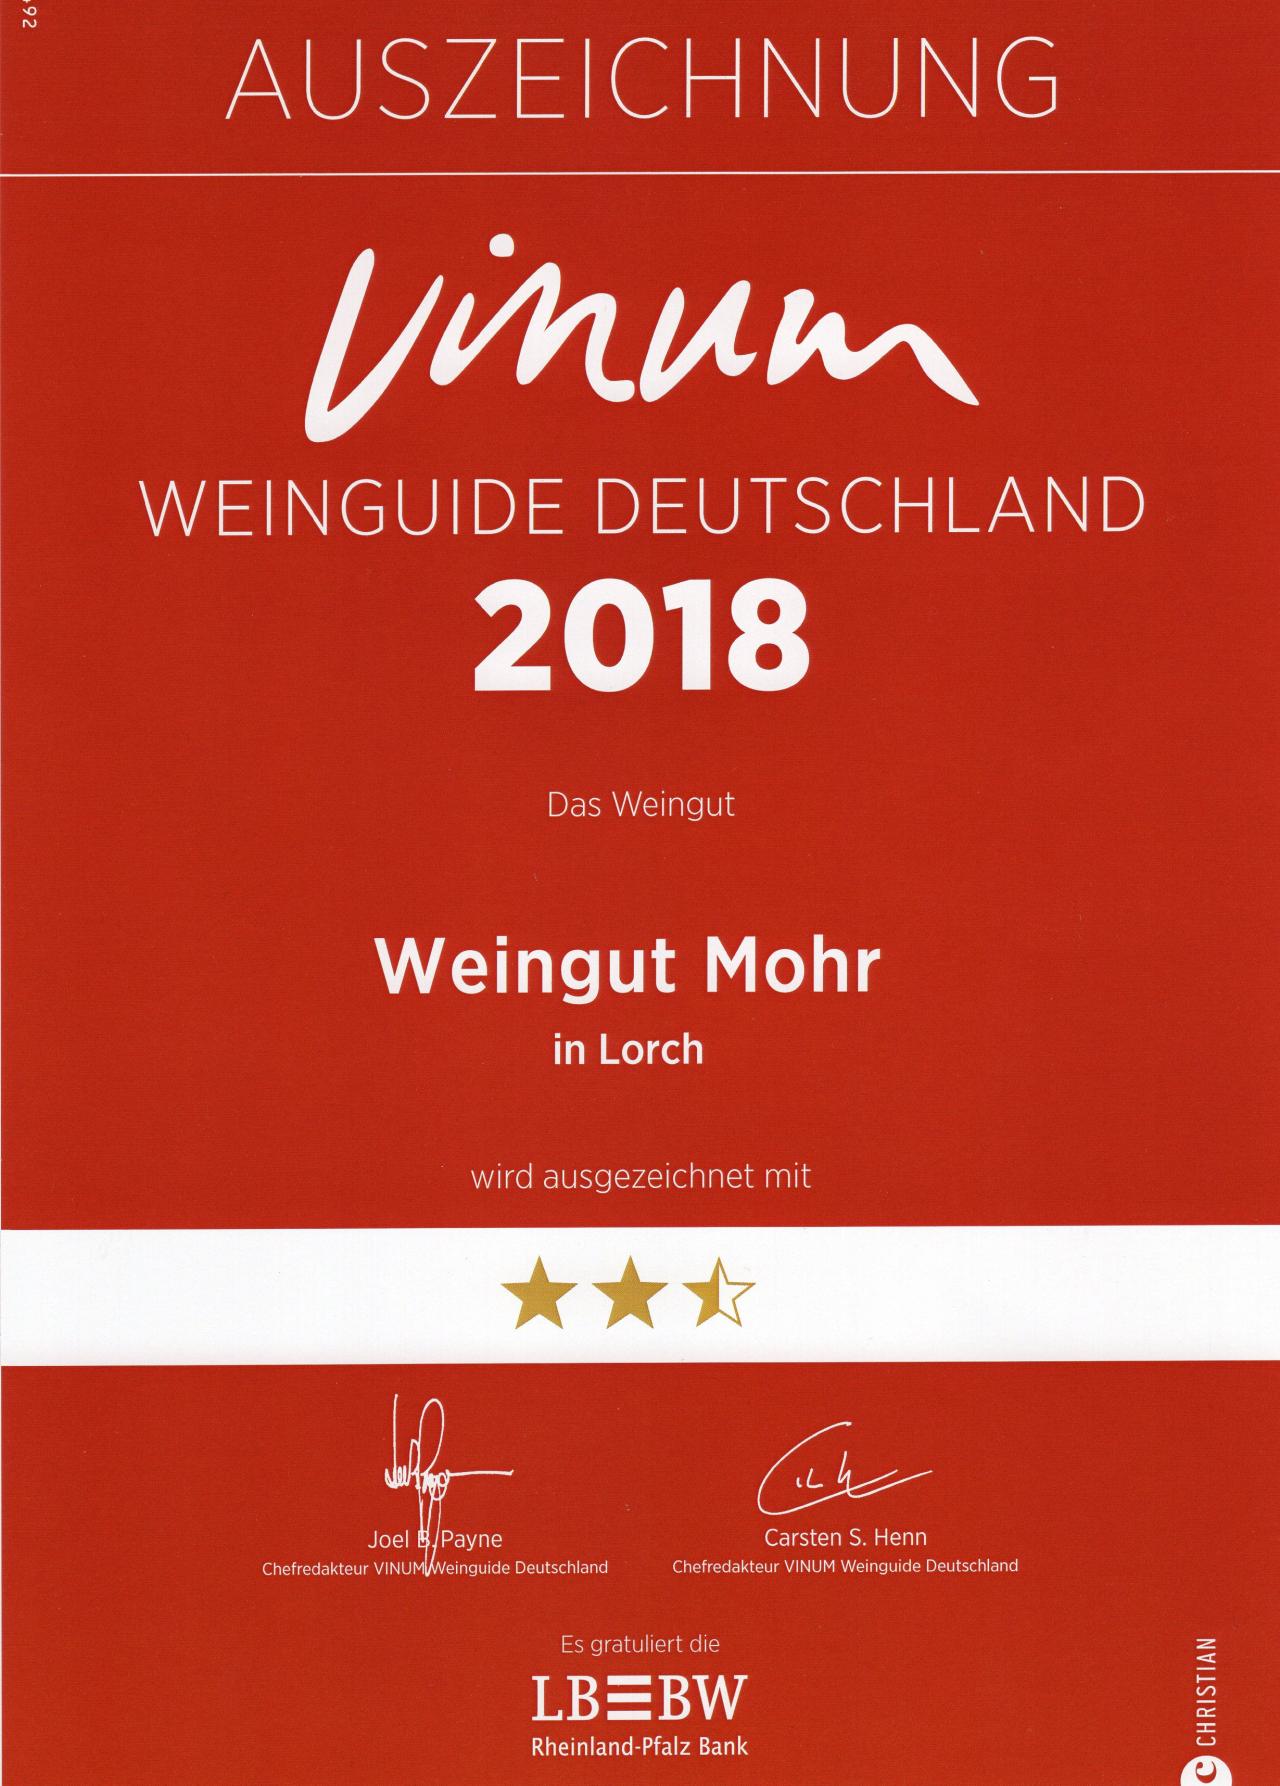 Vinum WEINGUIDE DEUTSCHLAND 2018 - Urkunde